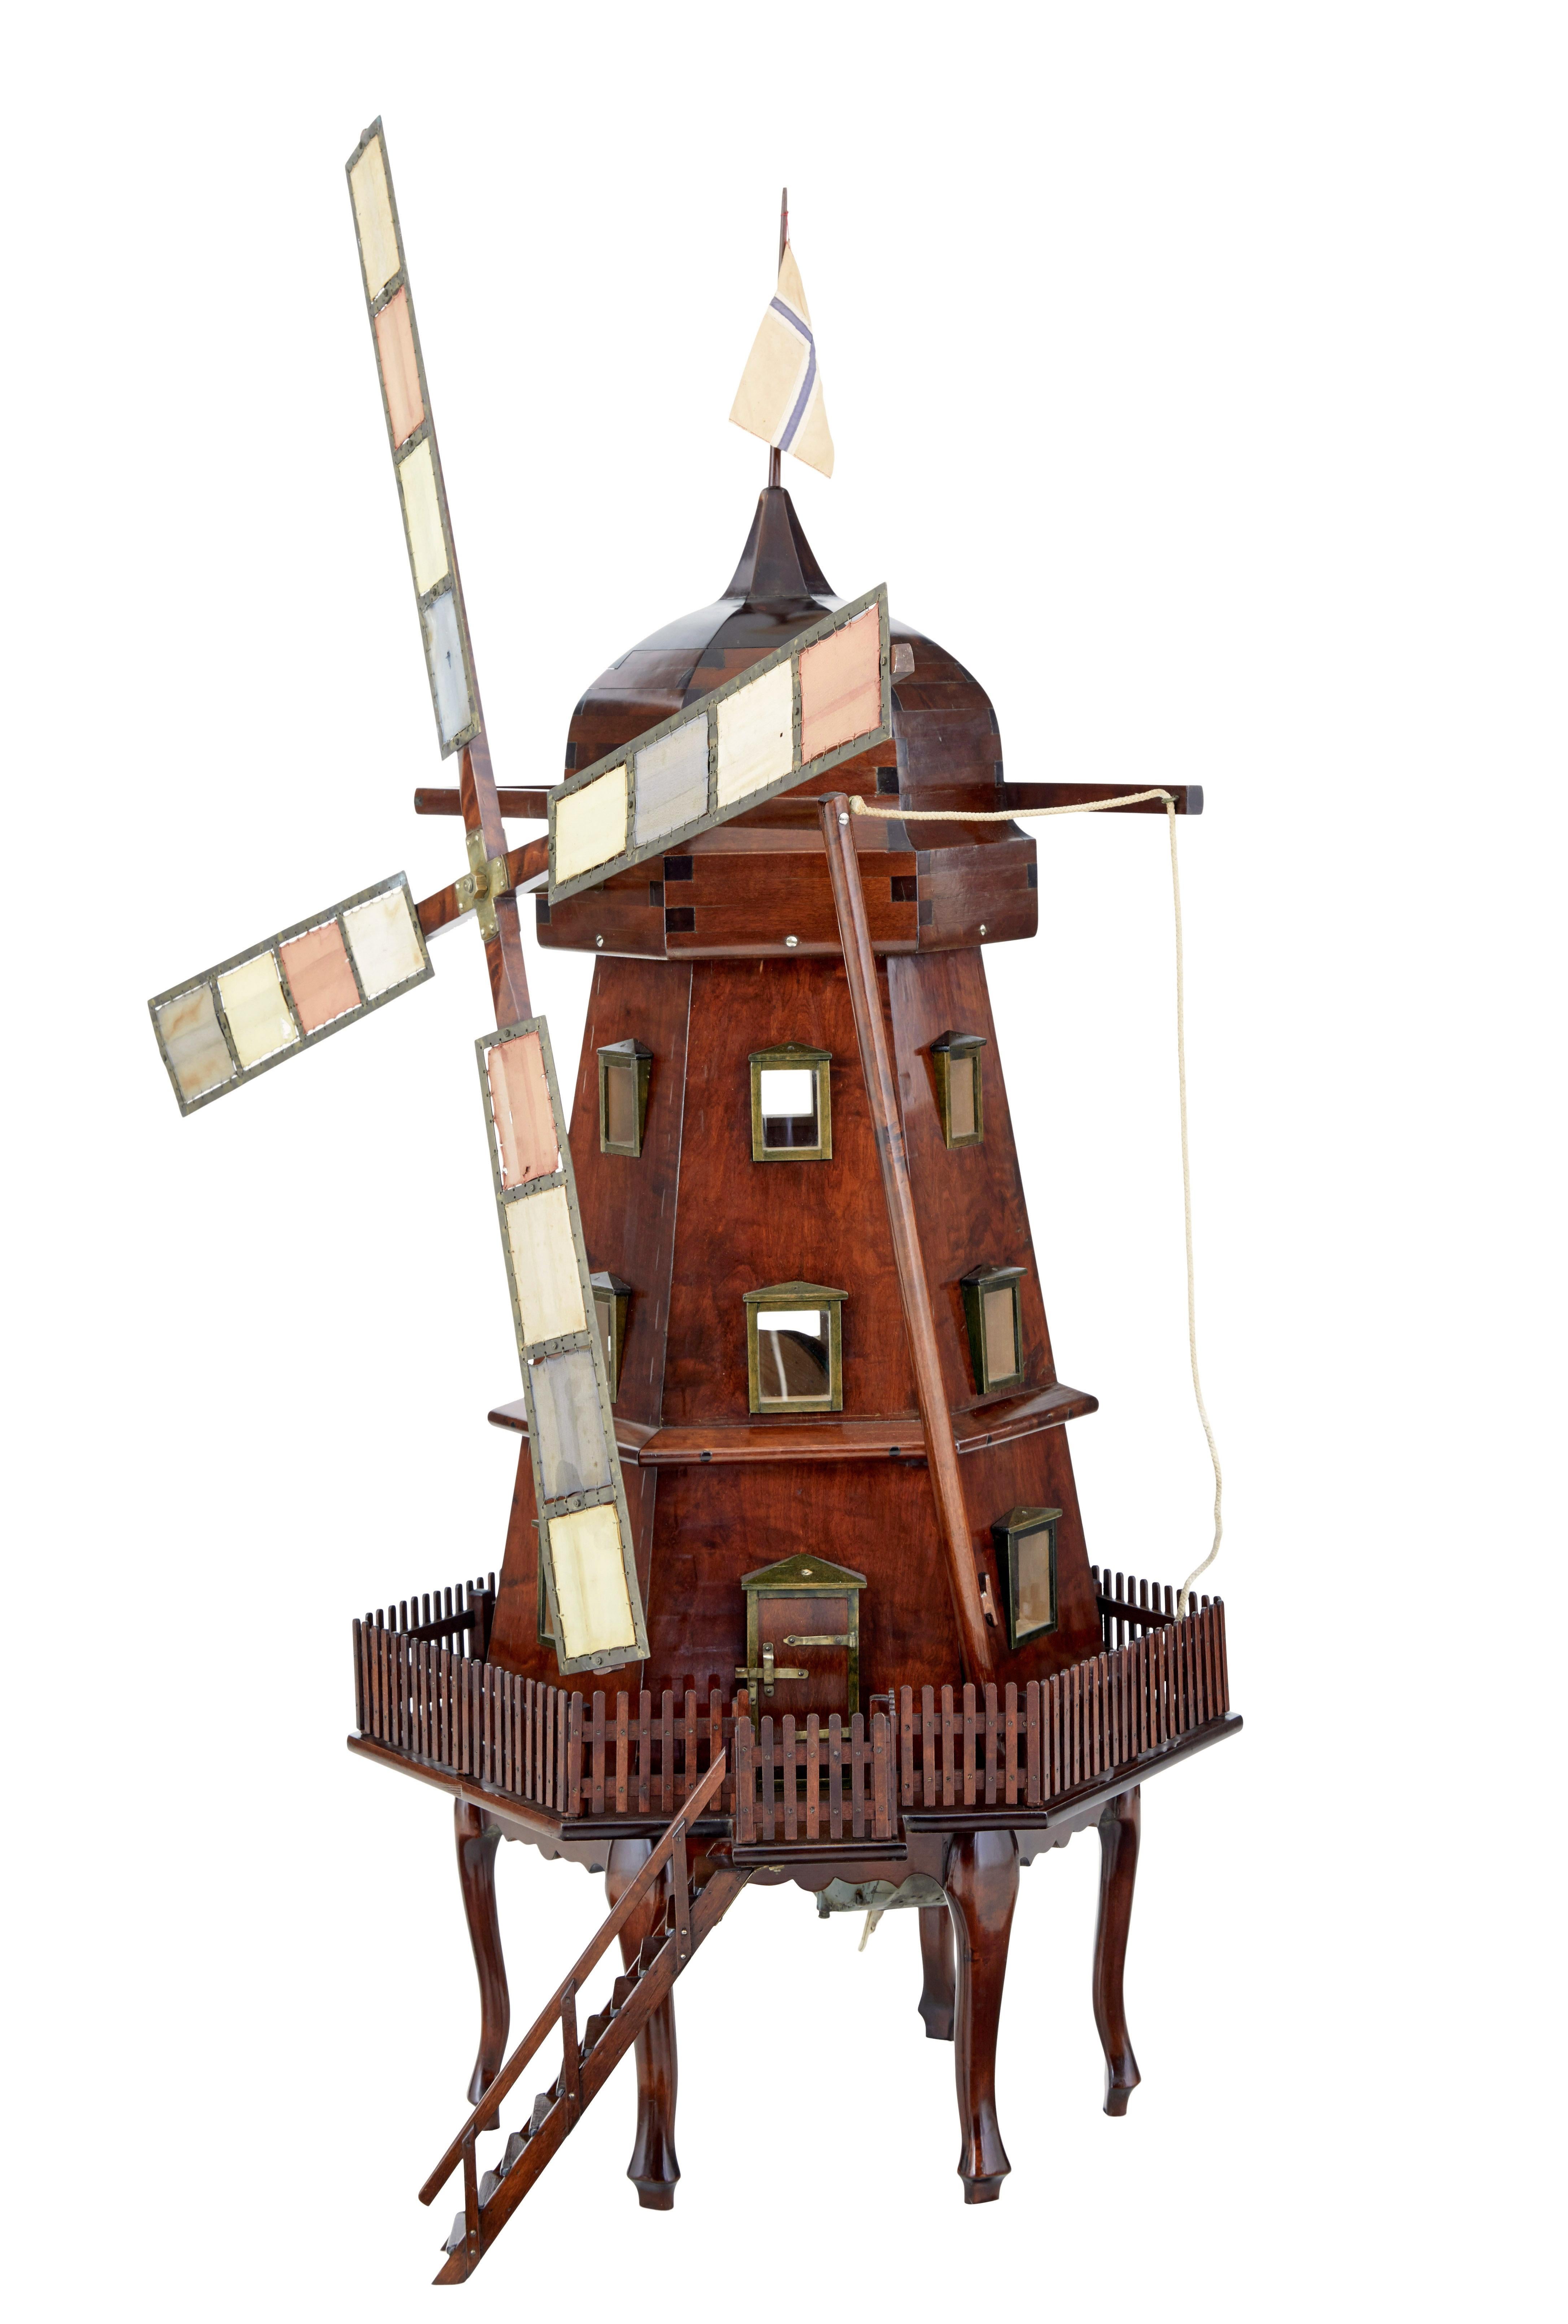 Dekorative holländische Windmühle aus dem frühen 20. Jahrhundert, ca. 1920.

Wir freuen uns, dieses reizvolle Modell einer holländischen Windmühle anbieten zu können.  Aufgrund der Qualität und der Sorgfalt, mit der es hergestellt wurde, kann es nur